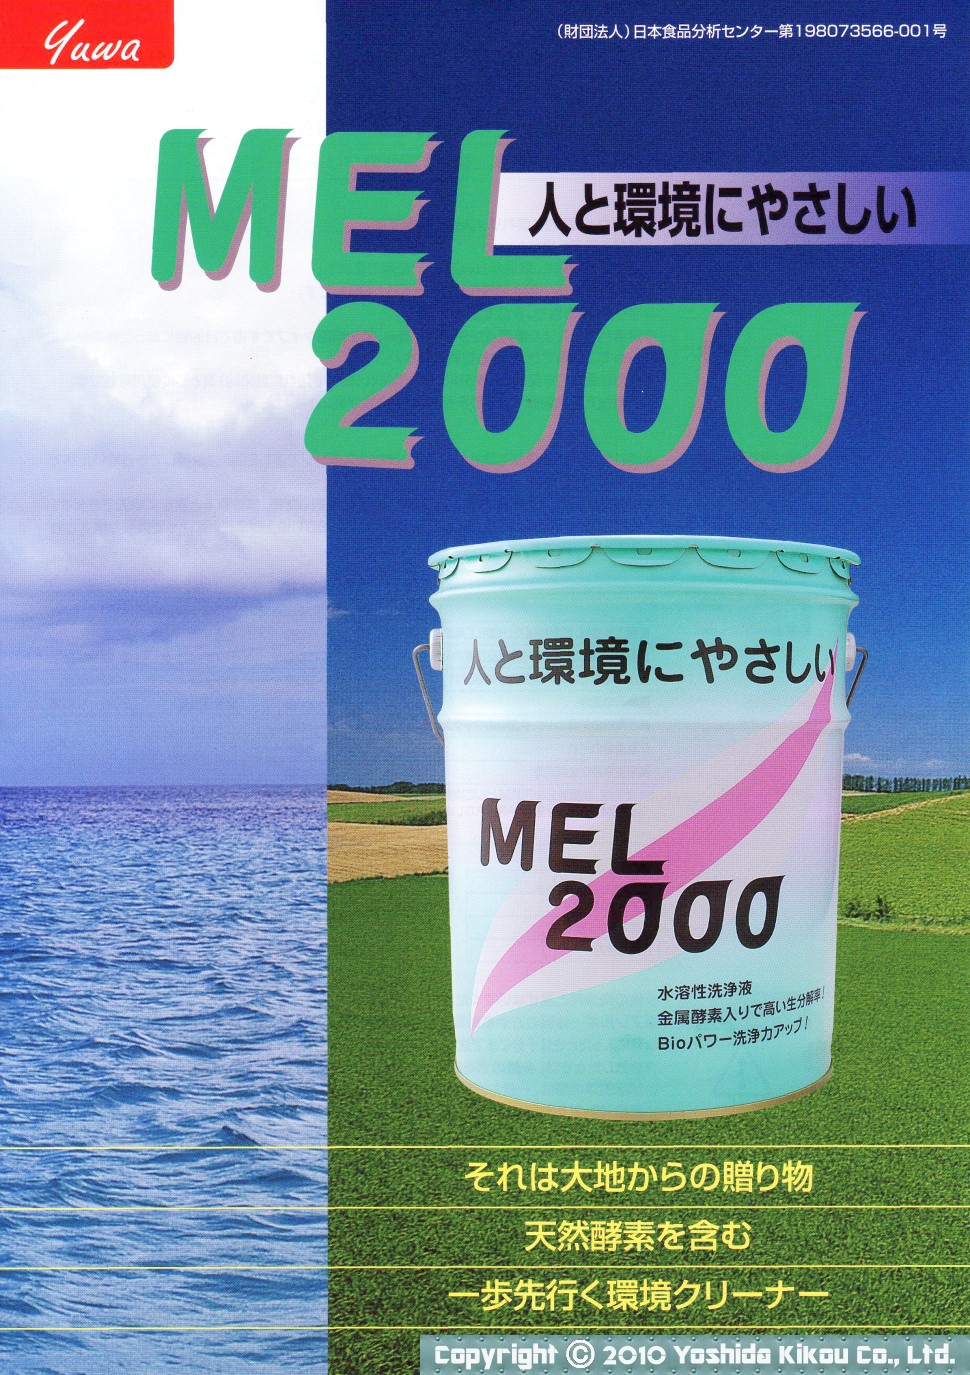 強力洗浄剤「MEL2000」 02